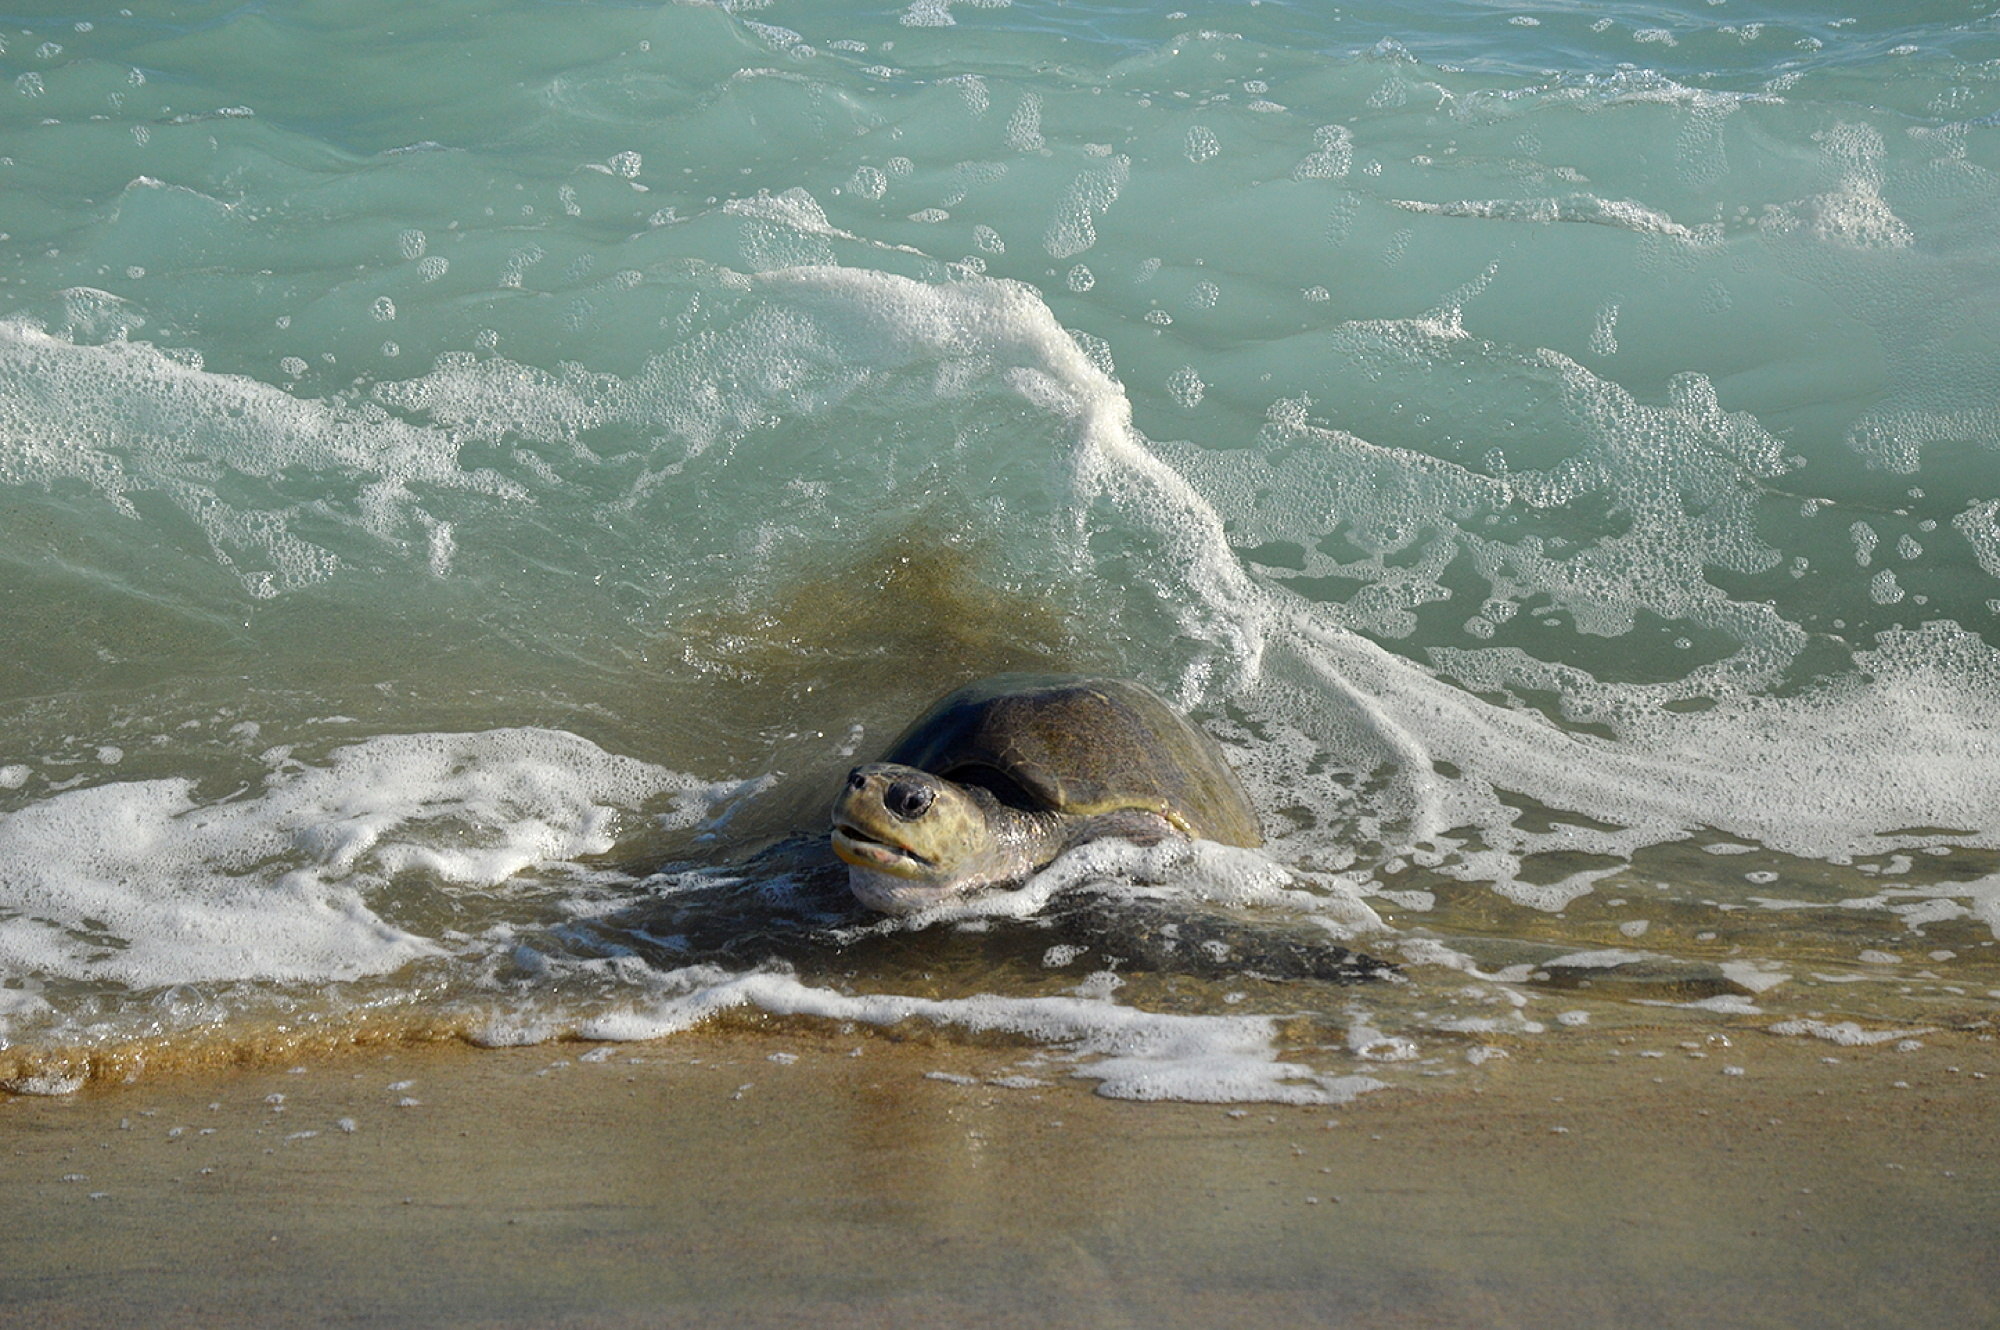  Liberan crías de tortuga marina en las costas de Quintana Roo